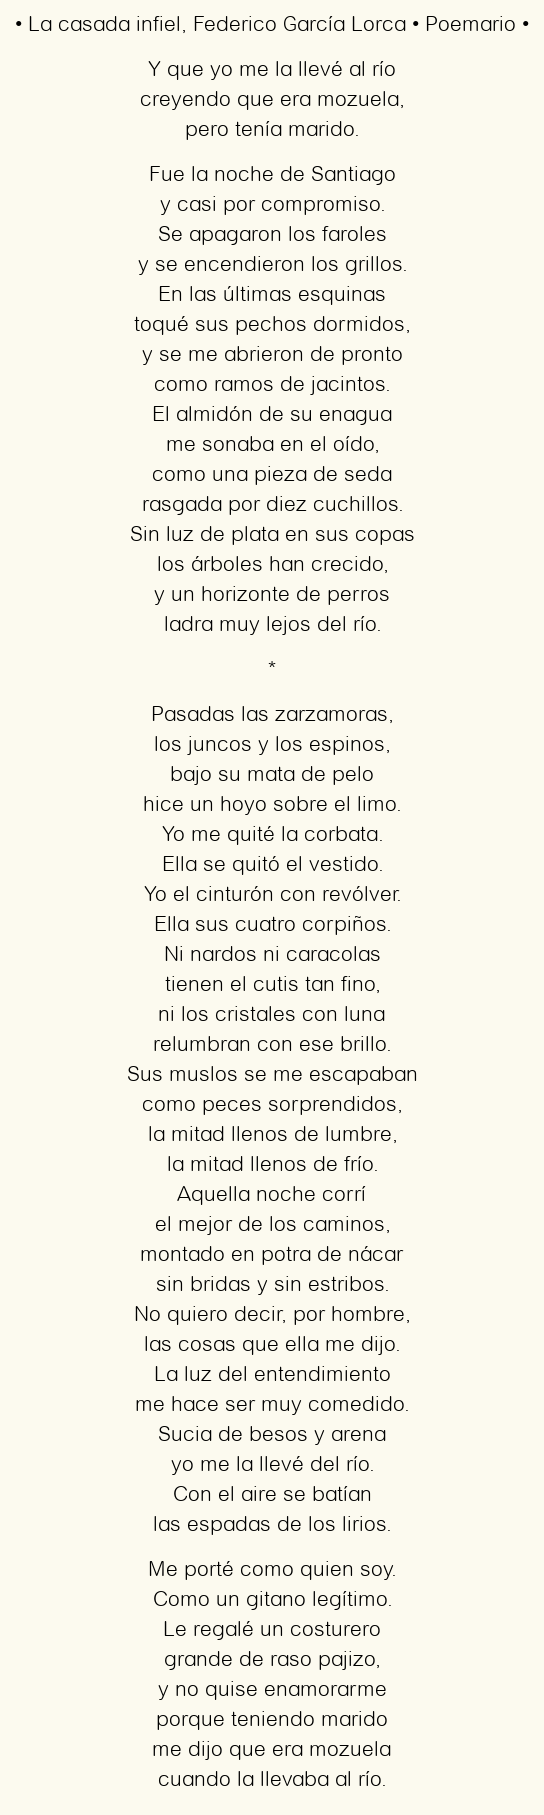 Imagen con el poema La casada infiel, por Federico García Lorca